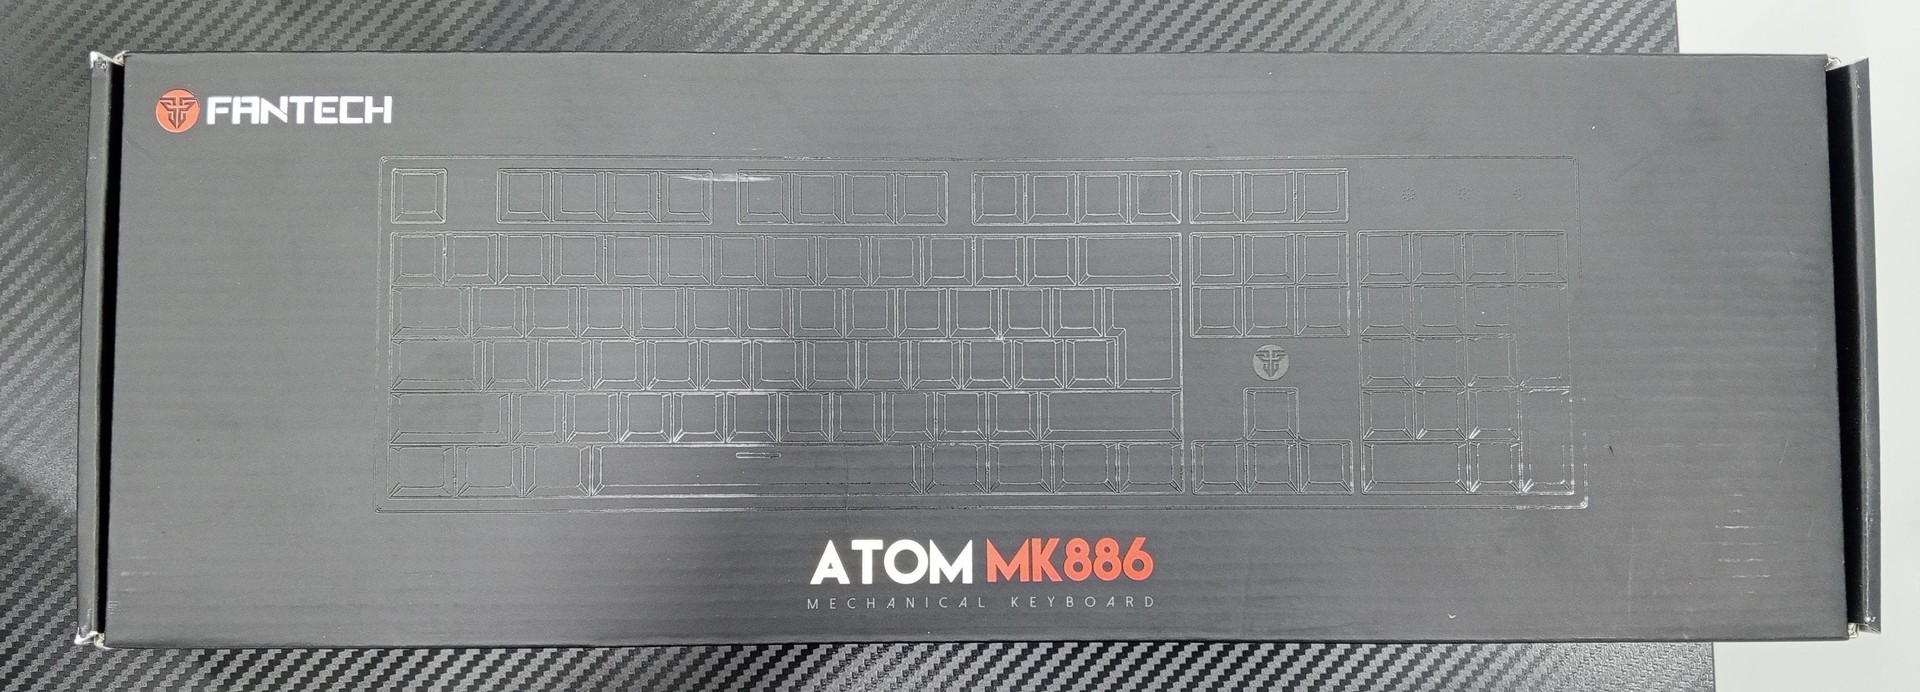 computadoras y laptops - Teclado Fantech MK886 ATOM